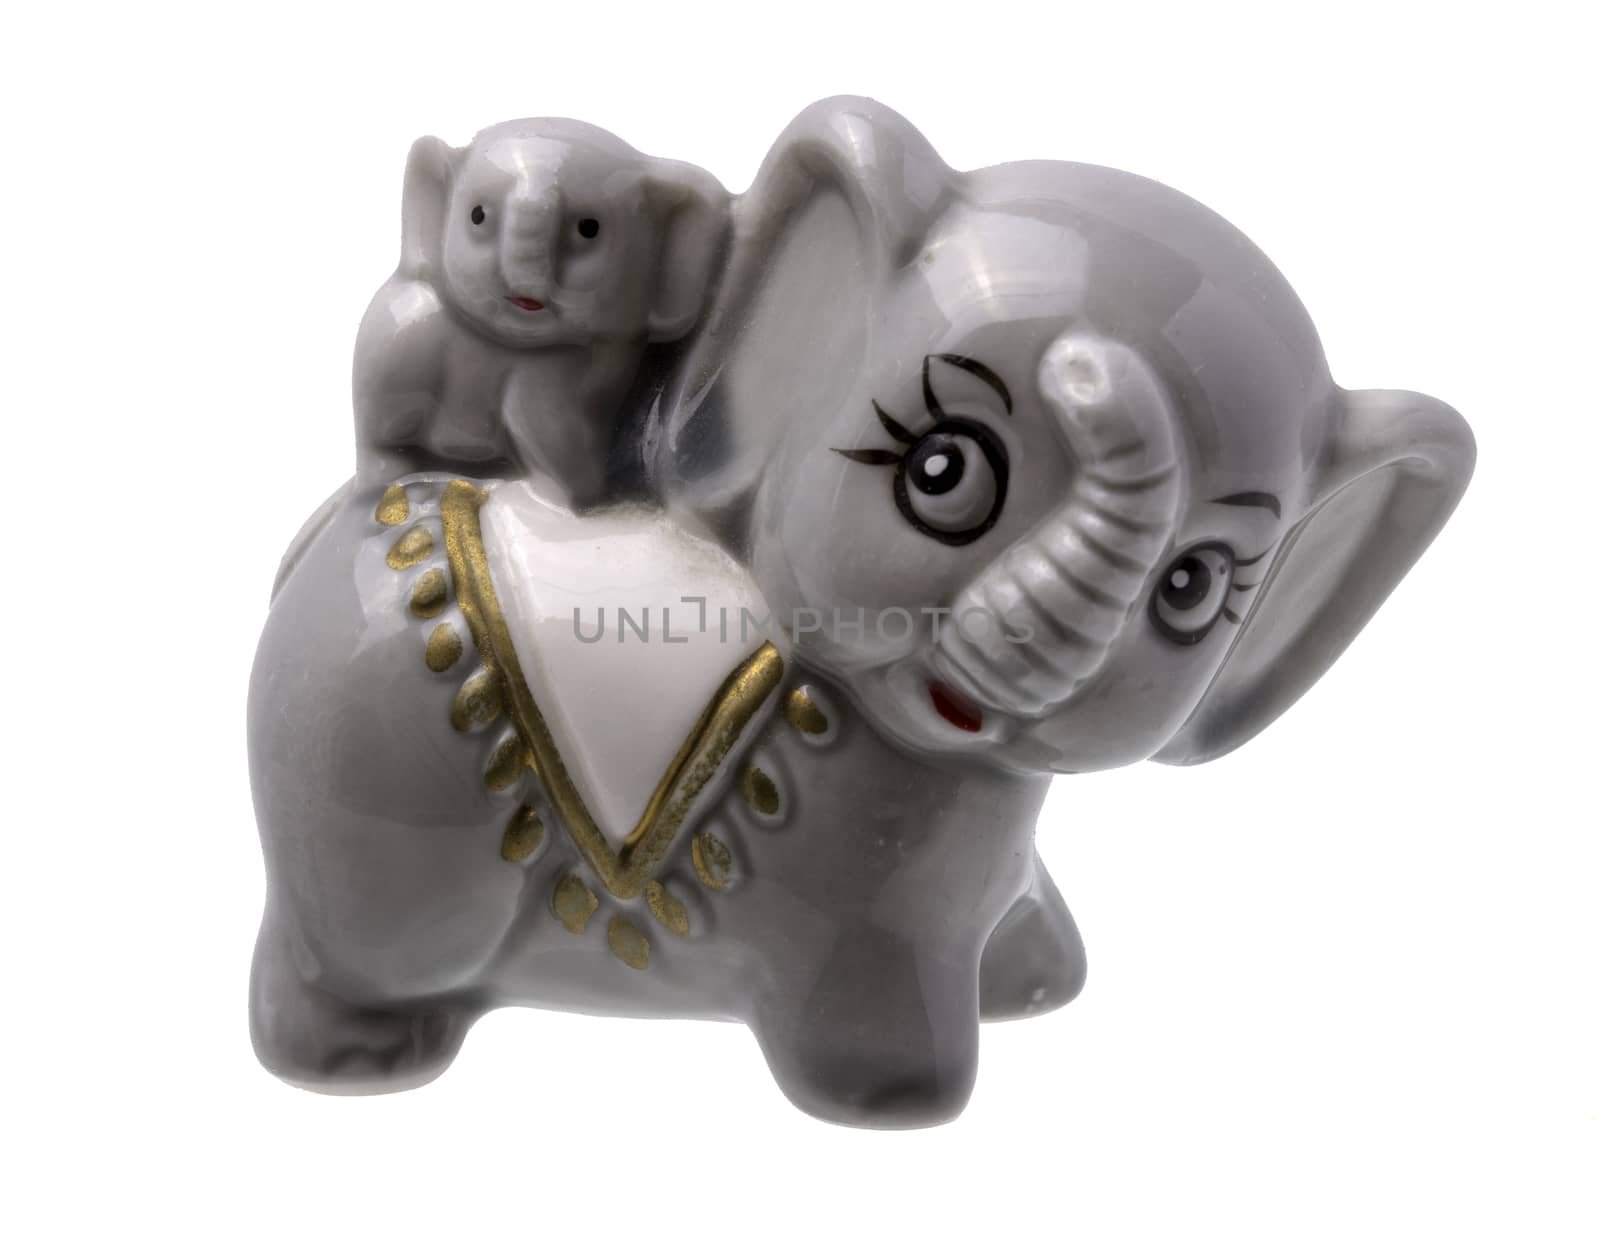 Grey Elephant And Elephant Baby Figurine On White Background